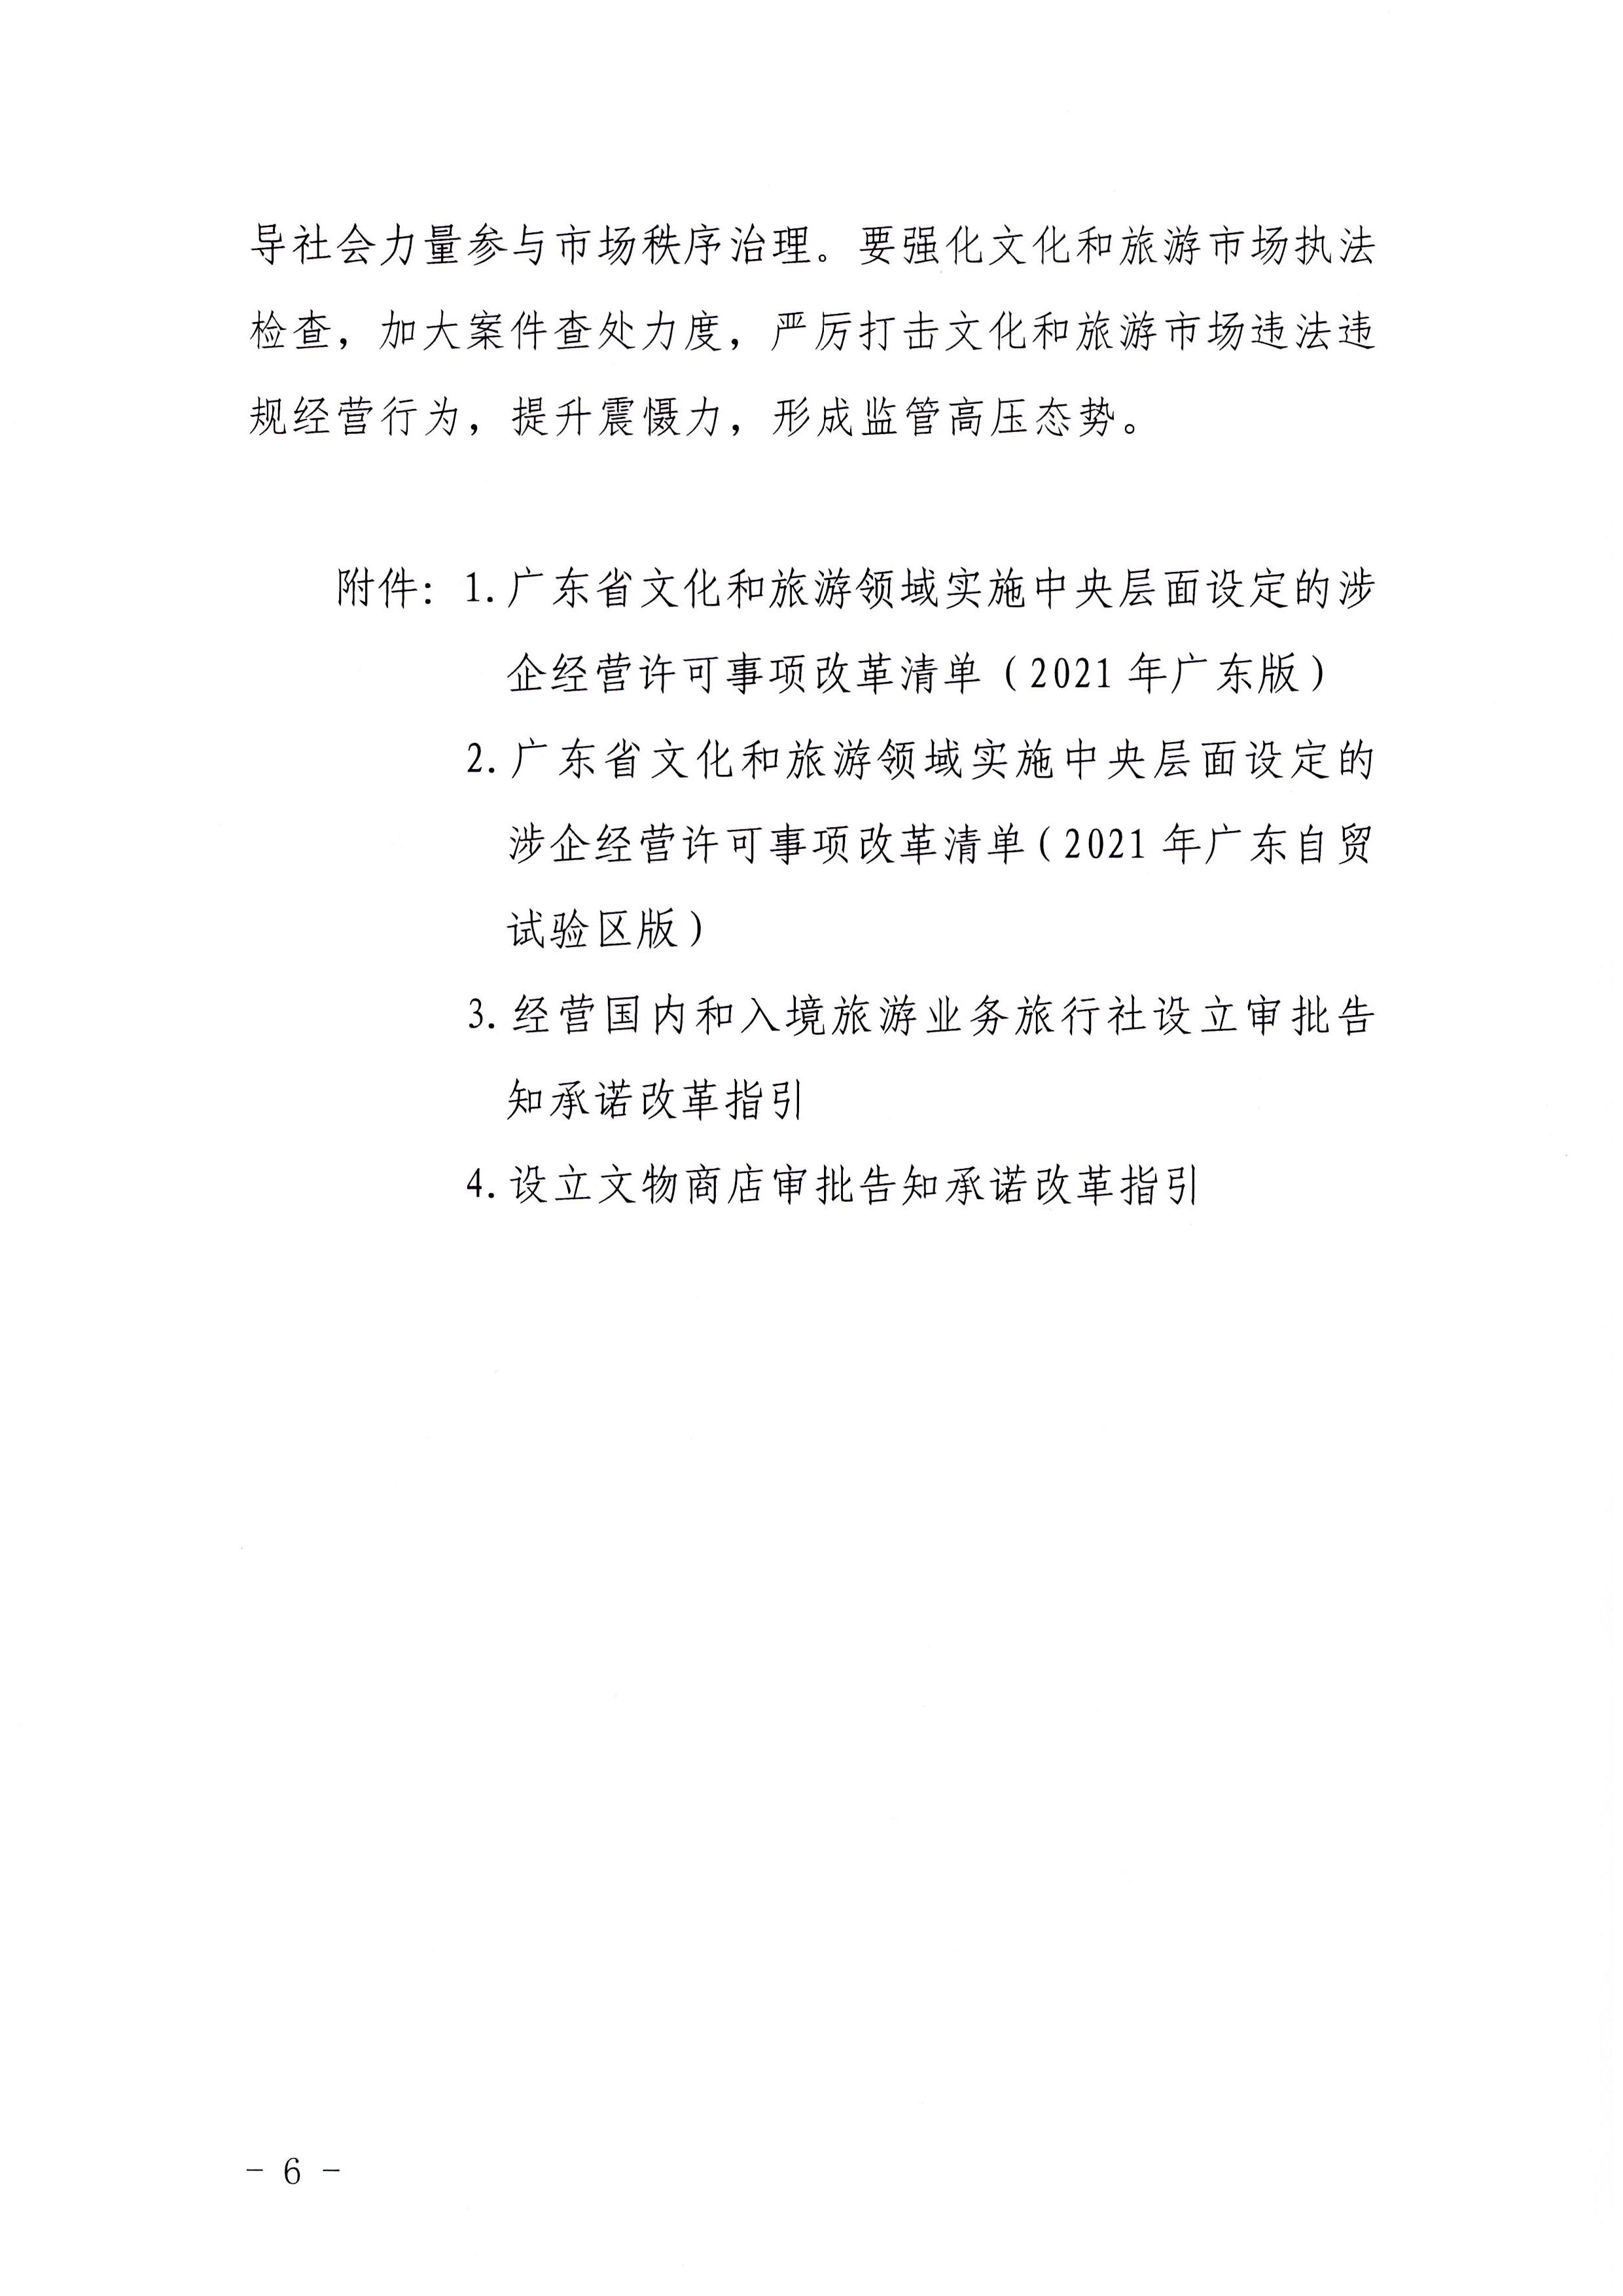 广东省文化和旅游厅印发证照分离改革实施方案的通知_页面_06.jpg